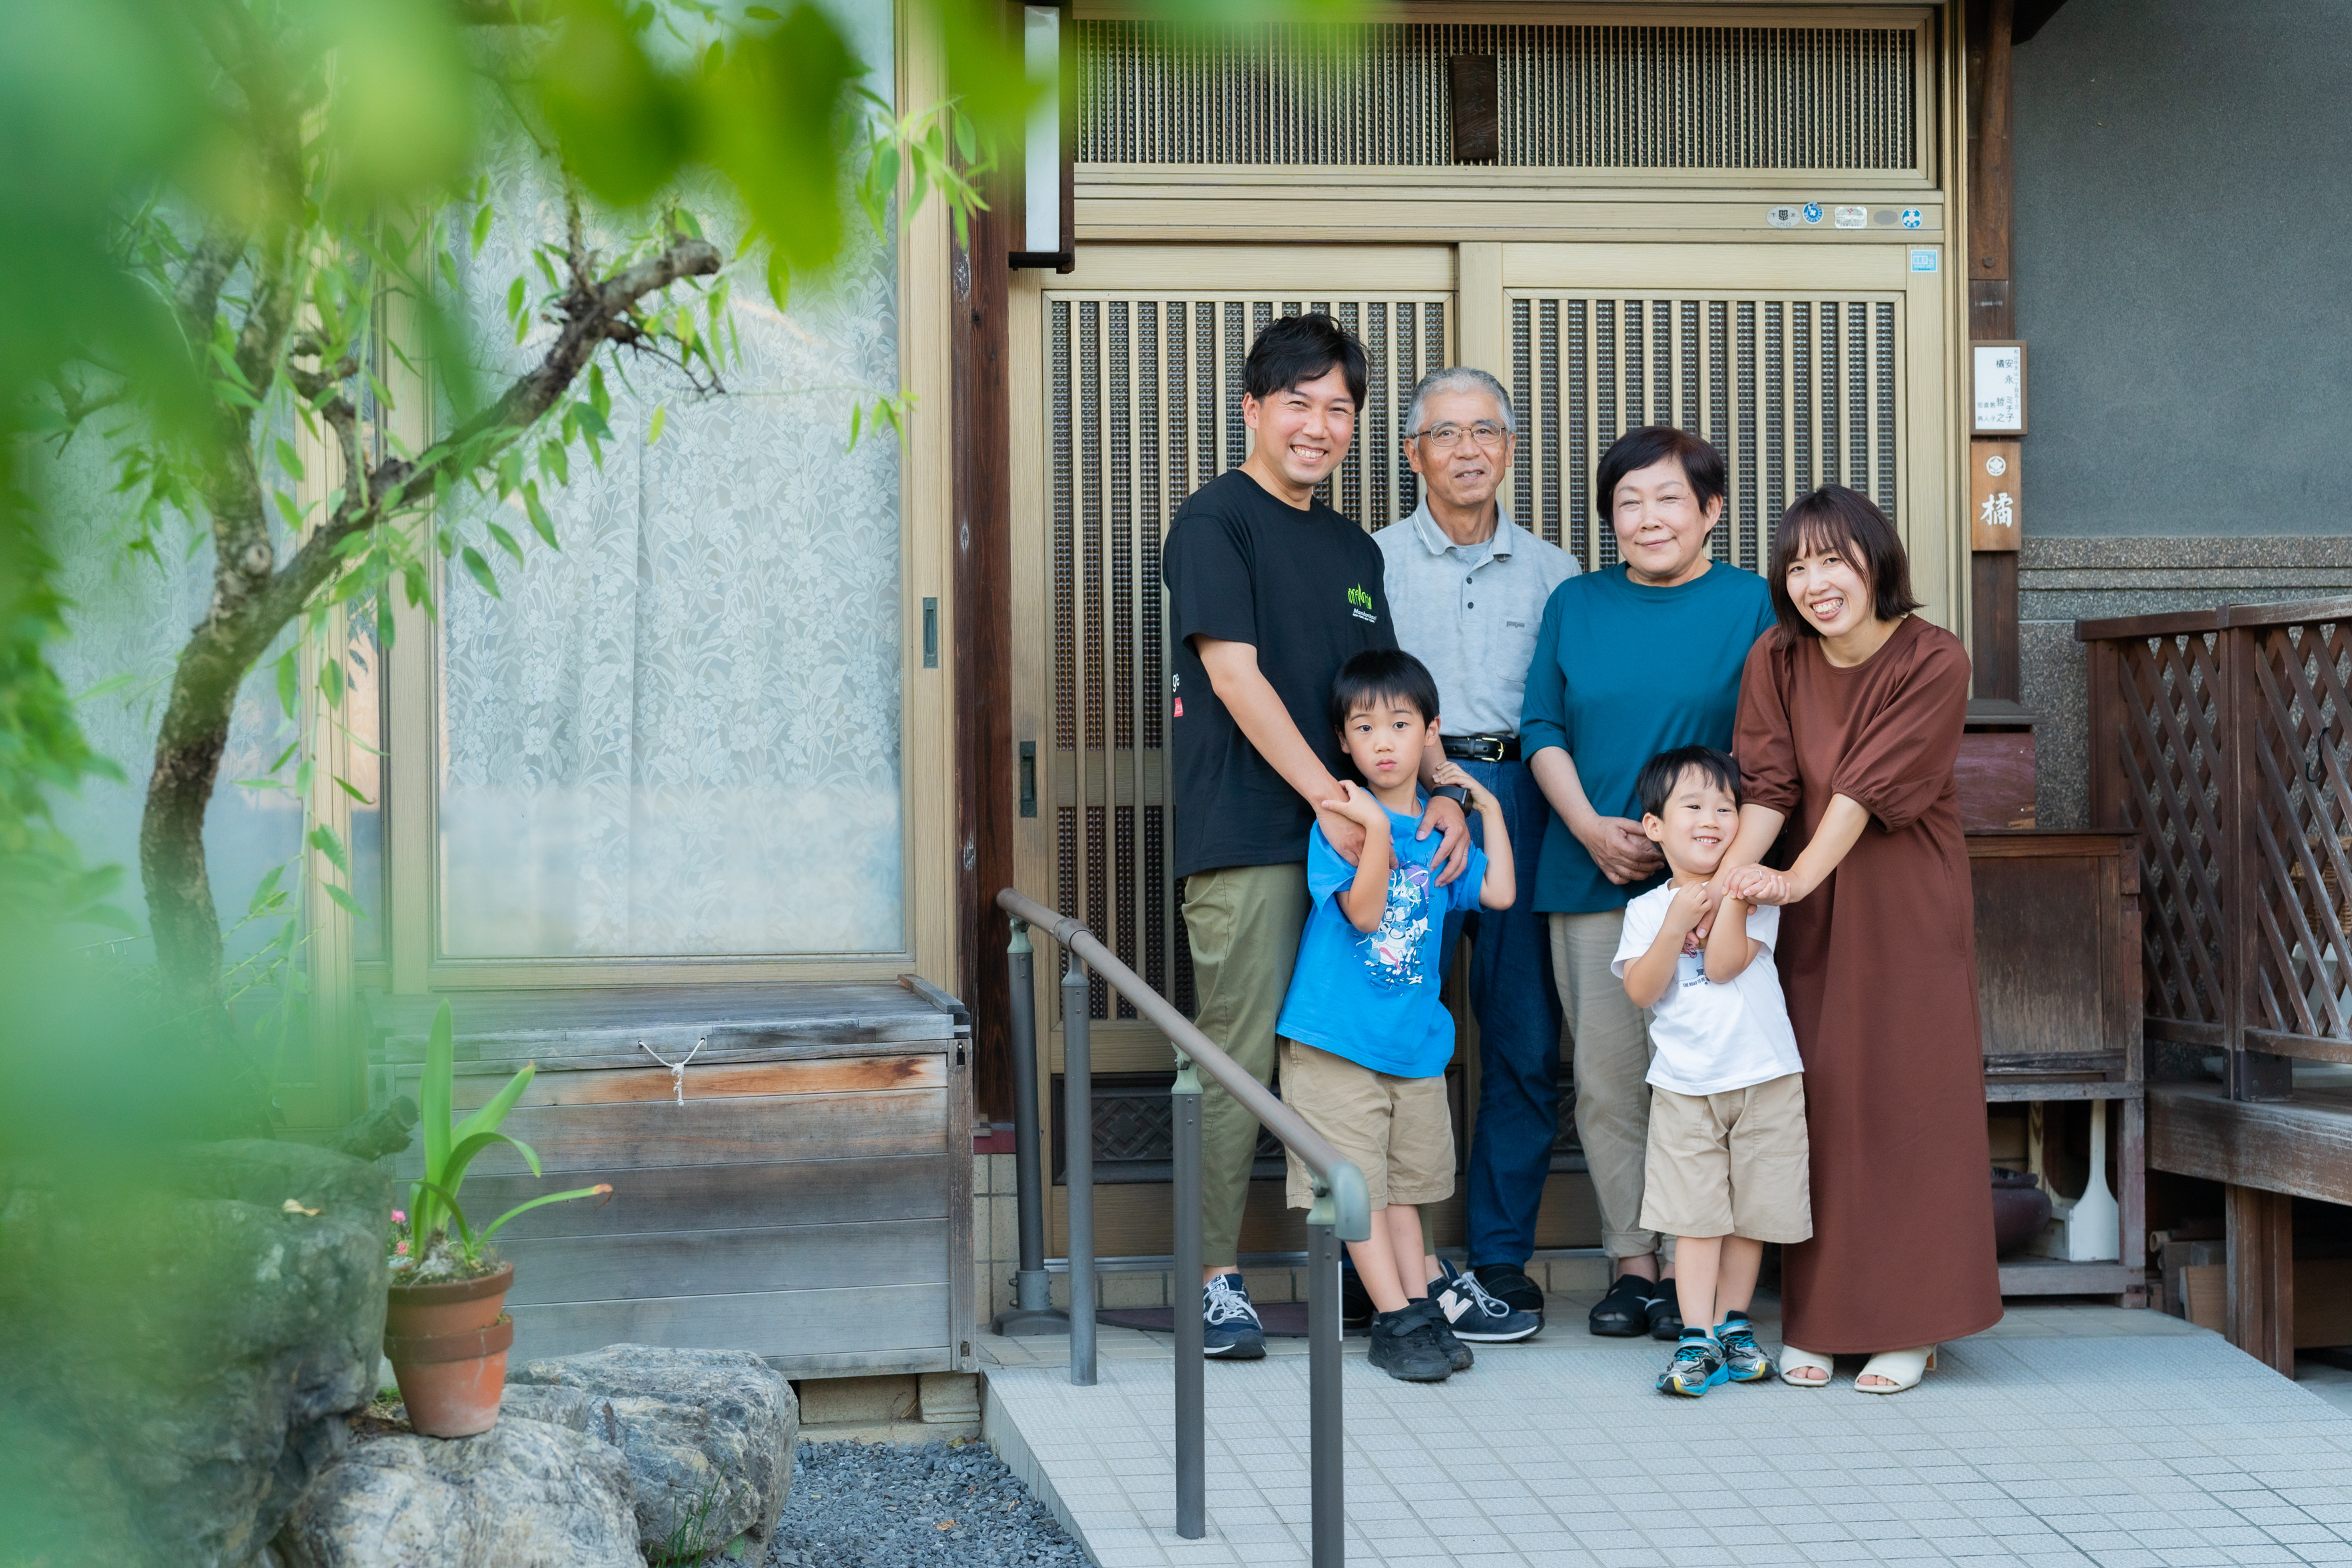 老後になるだろうと思っていたマイホームの夢が松山へ移住したことで叶いそうです。